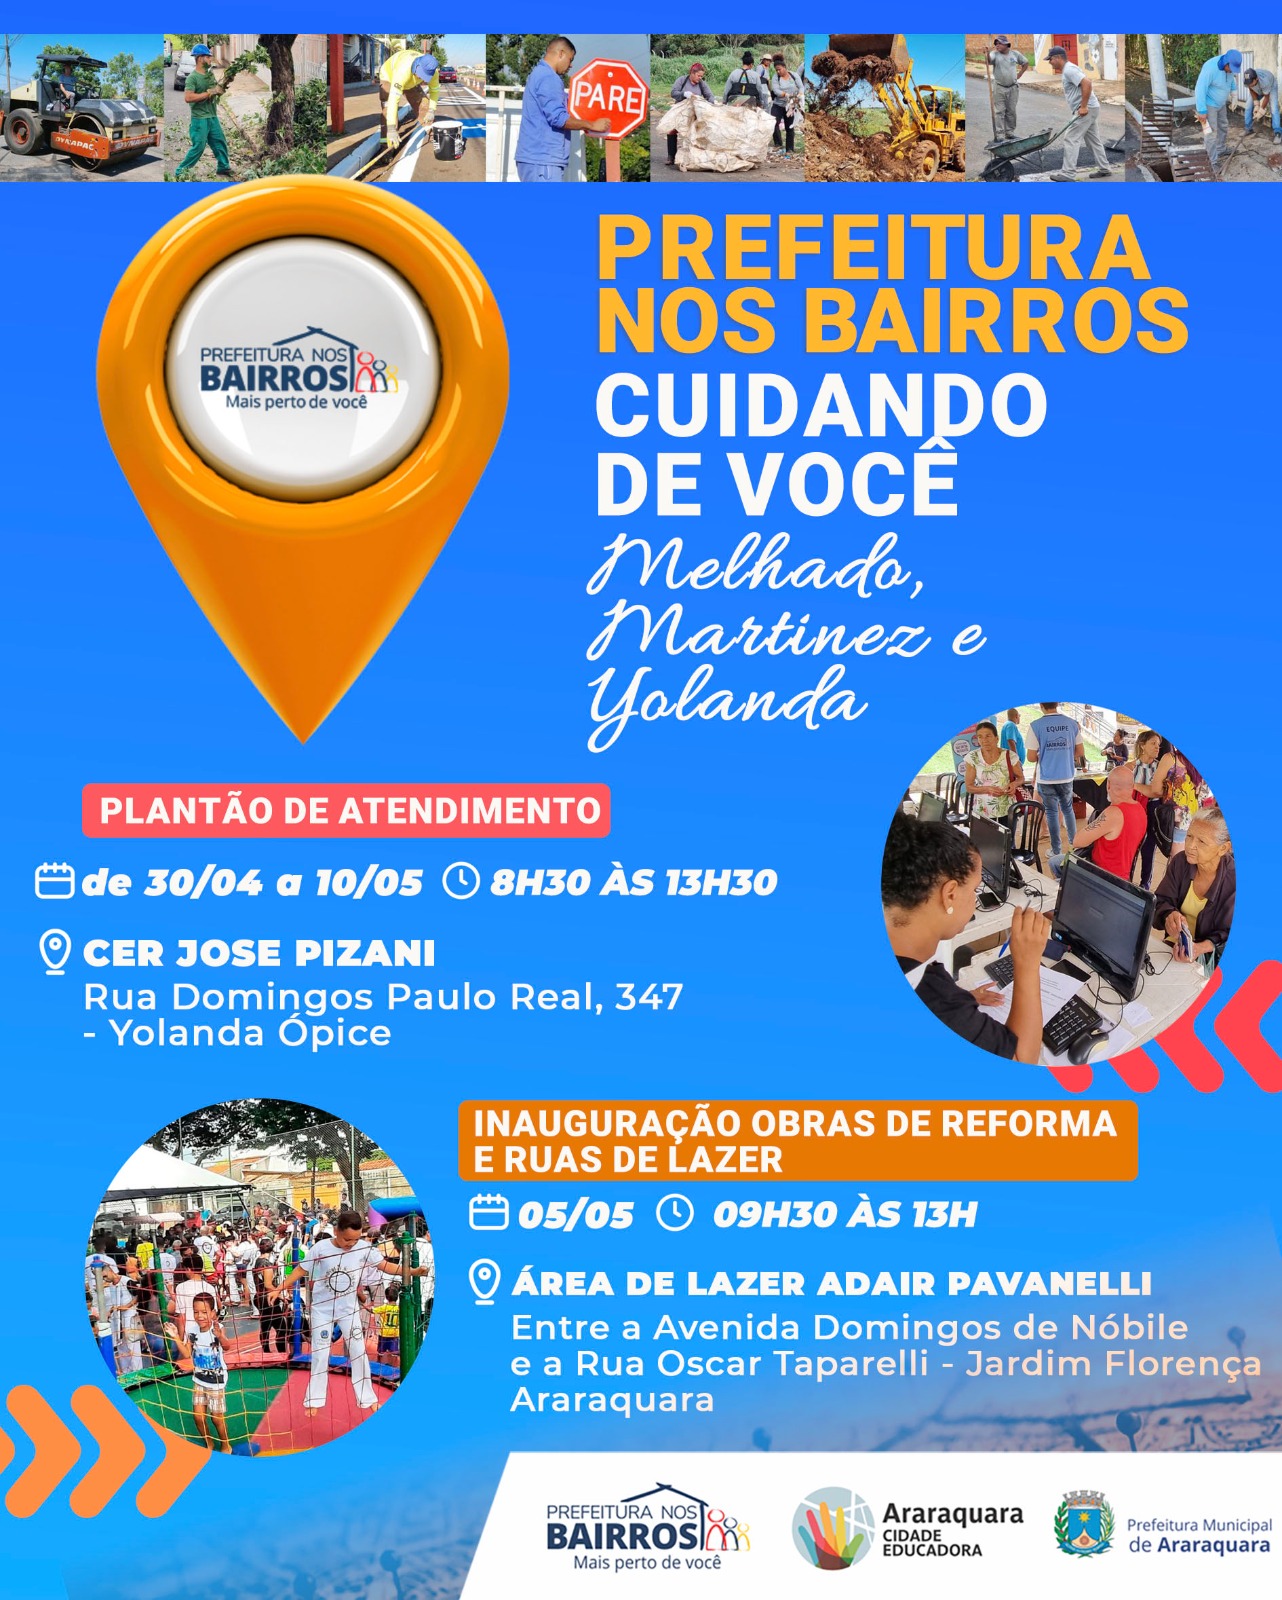 Prefeitura nos Bairros - Melhado, Yolanda e Martinez